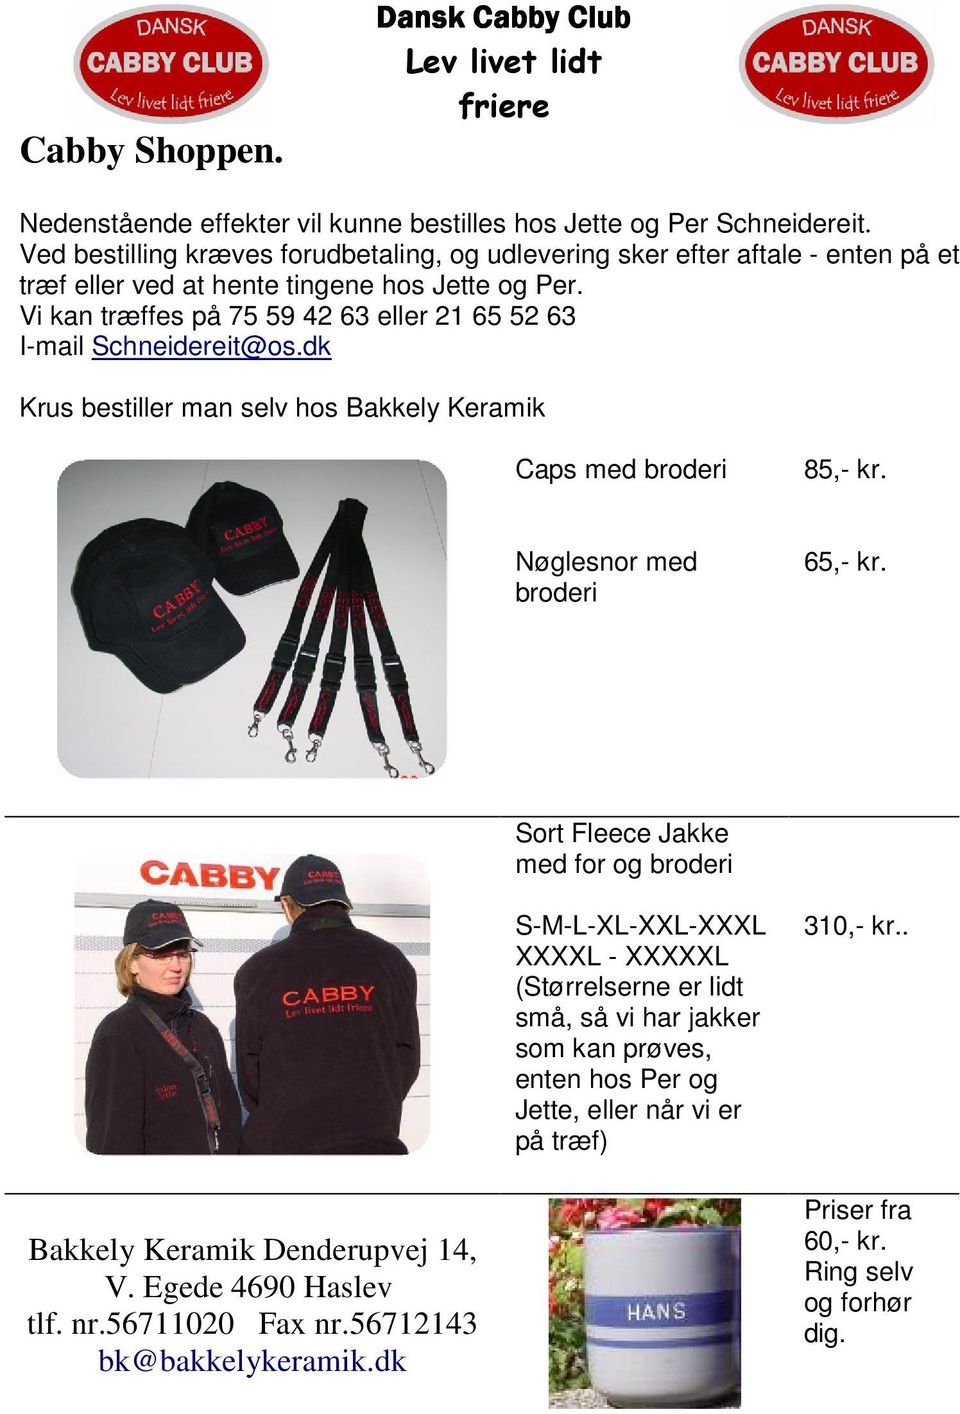 Vi kan træffes på 75 59 42 63 eller 21 65 52 63 I-mail Schneidereit@os.dk Krus bestiller man selv hos Bakkely Keramik Caps med broderi 85,- kr. Nøglesnor med broderi 65,- kr.